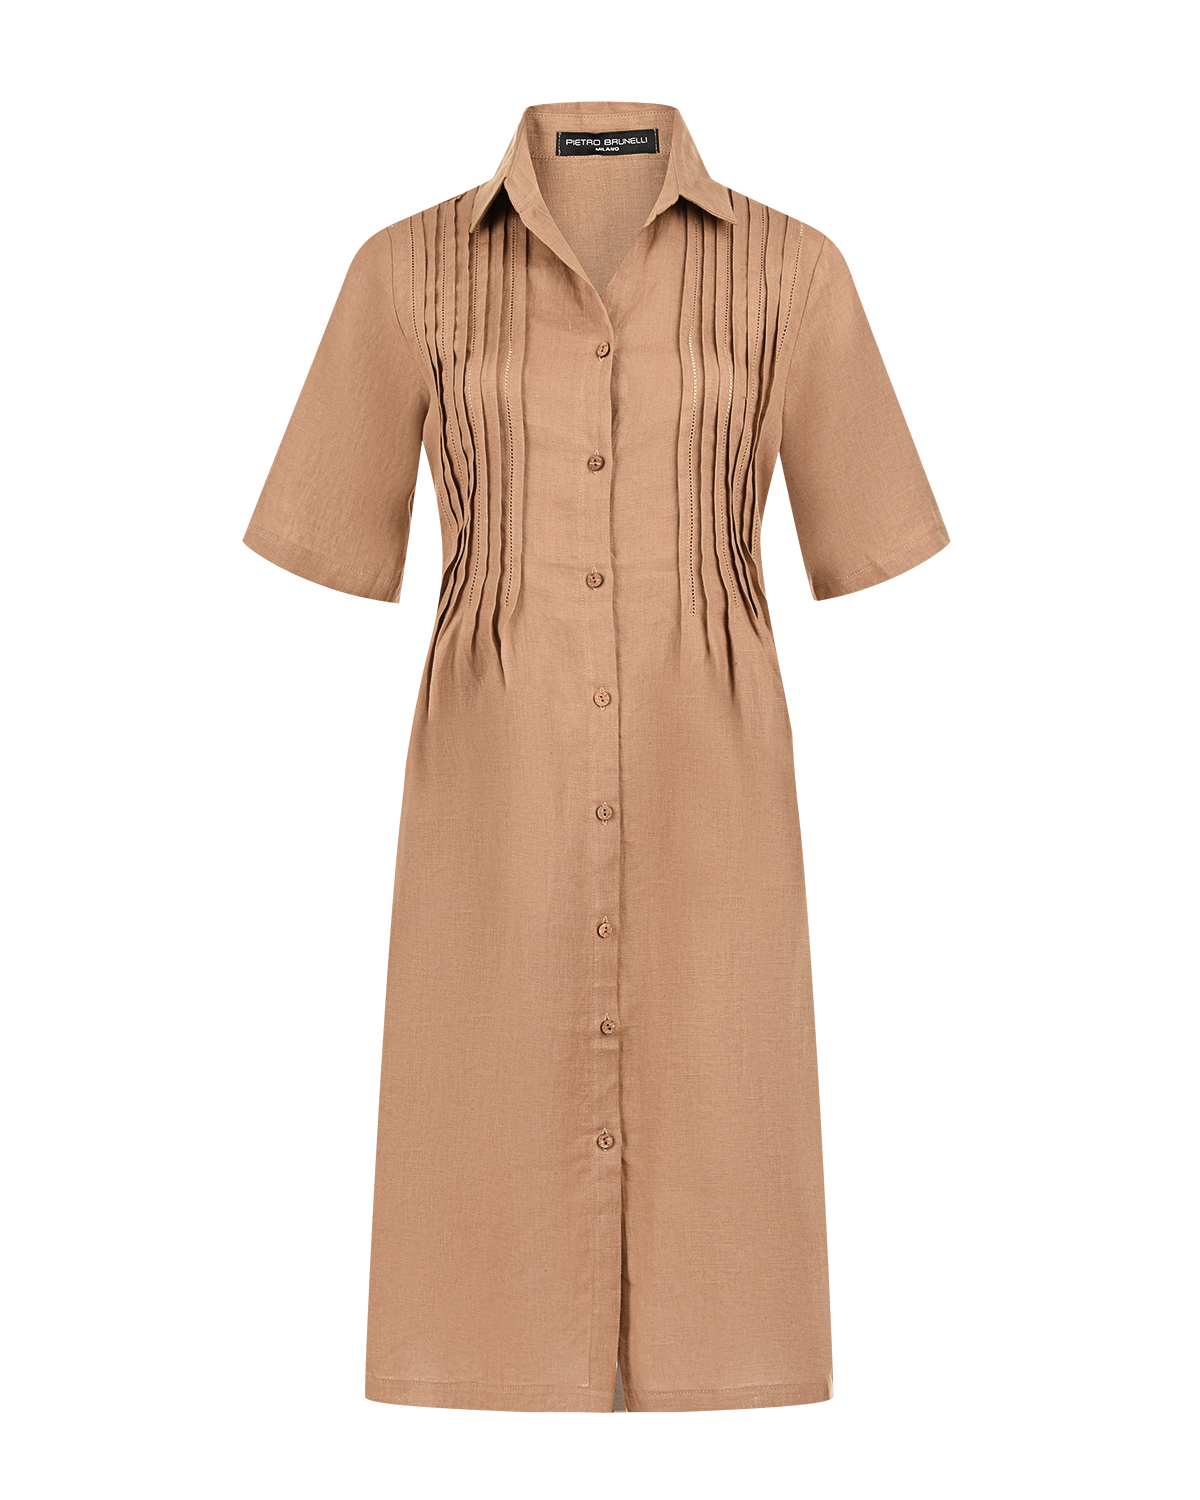 Льняное платье Celestre Pietro Brunelli, размер 42, цвет коричневый